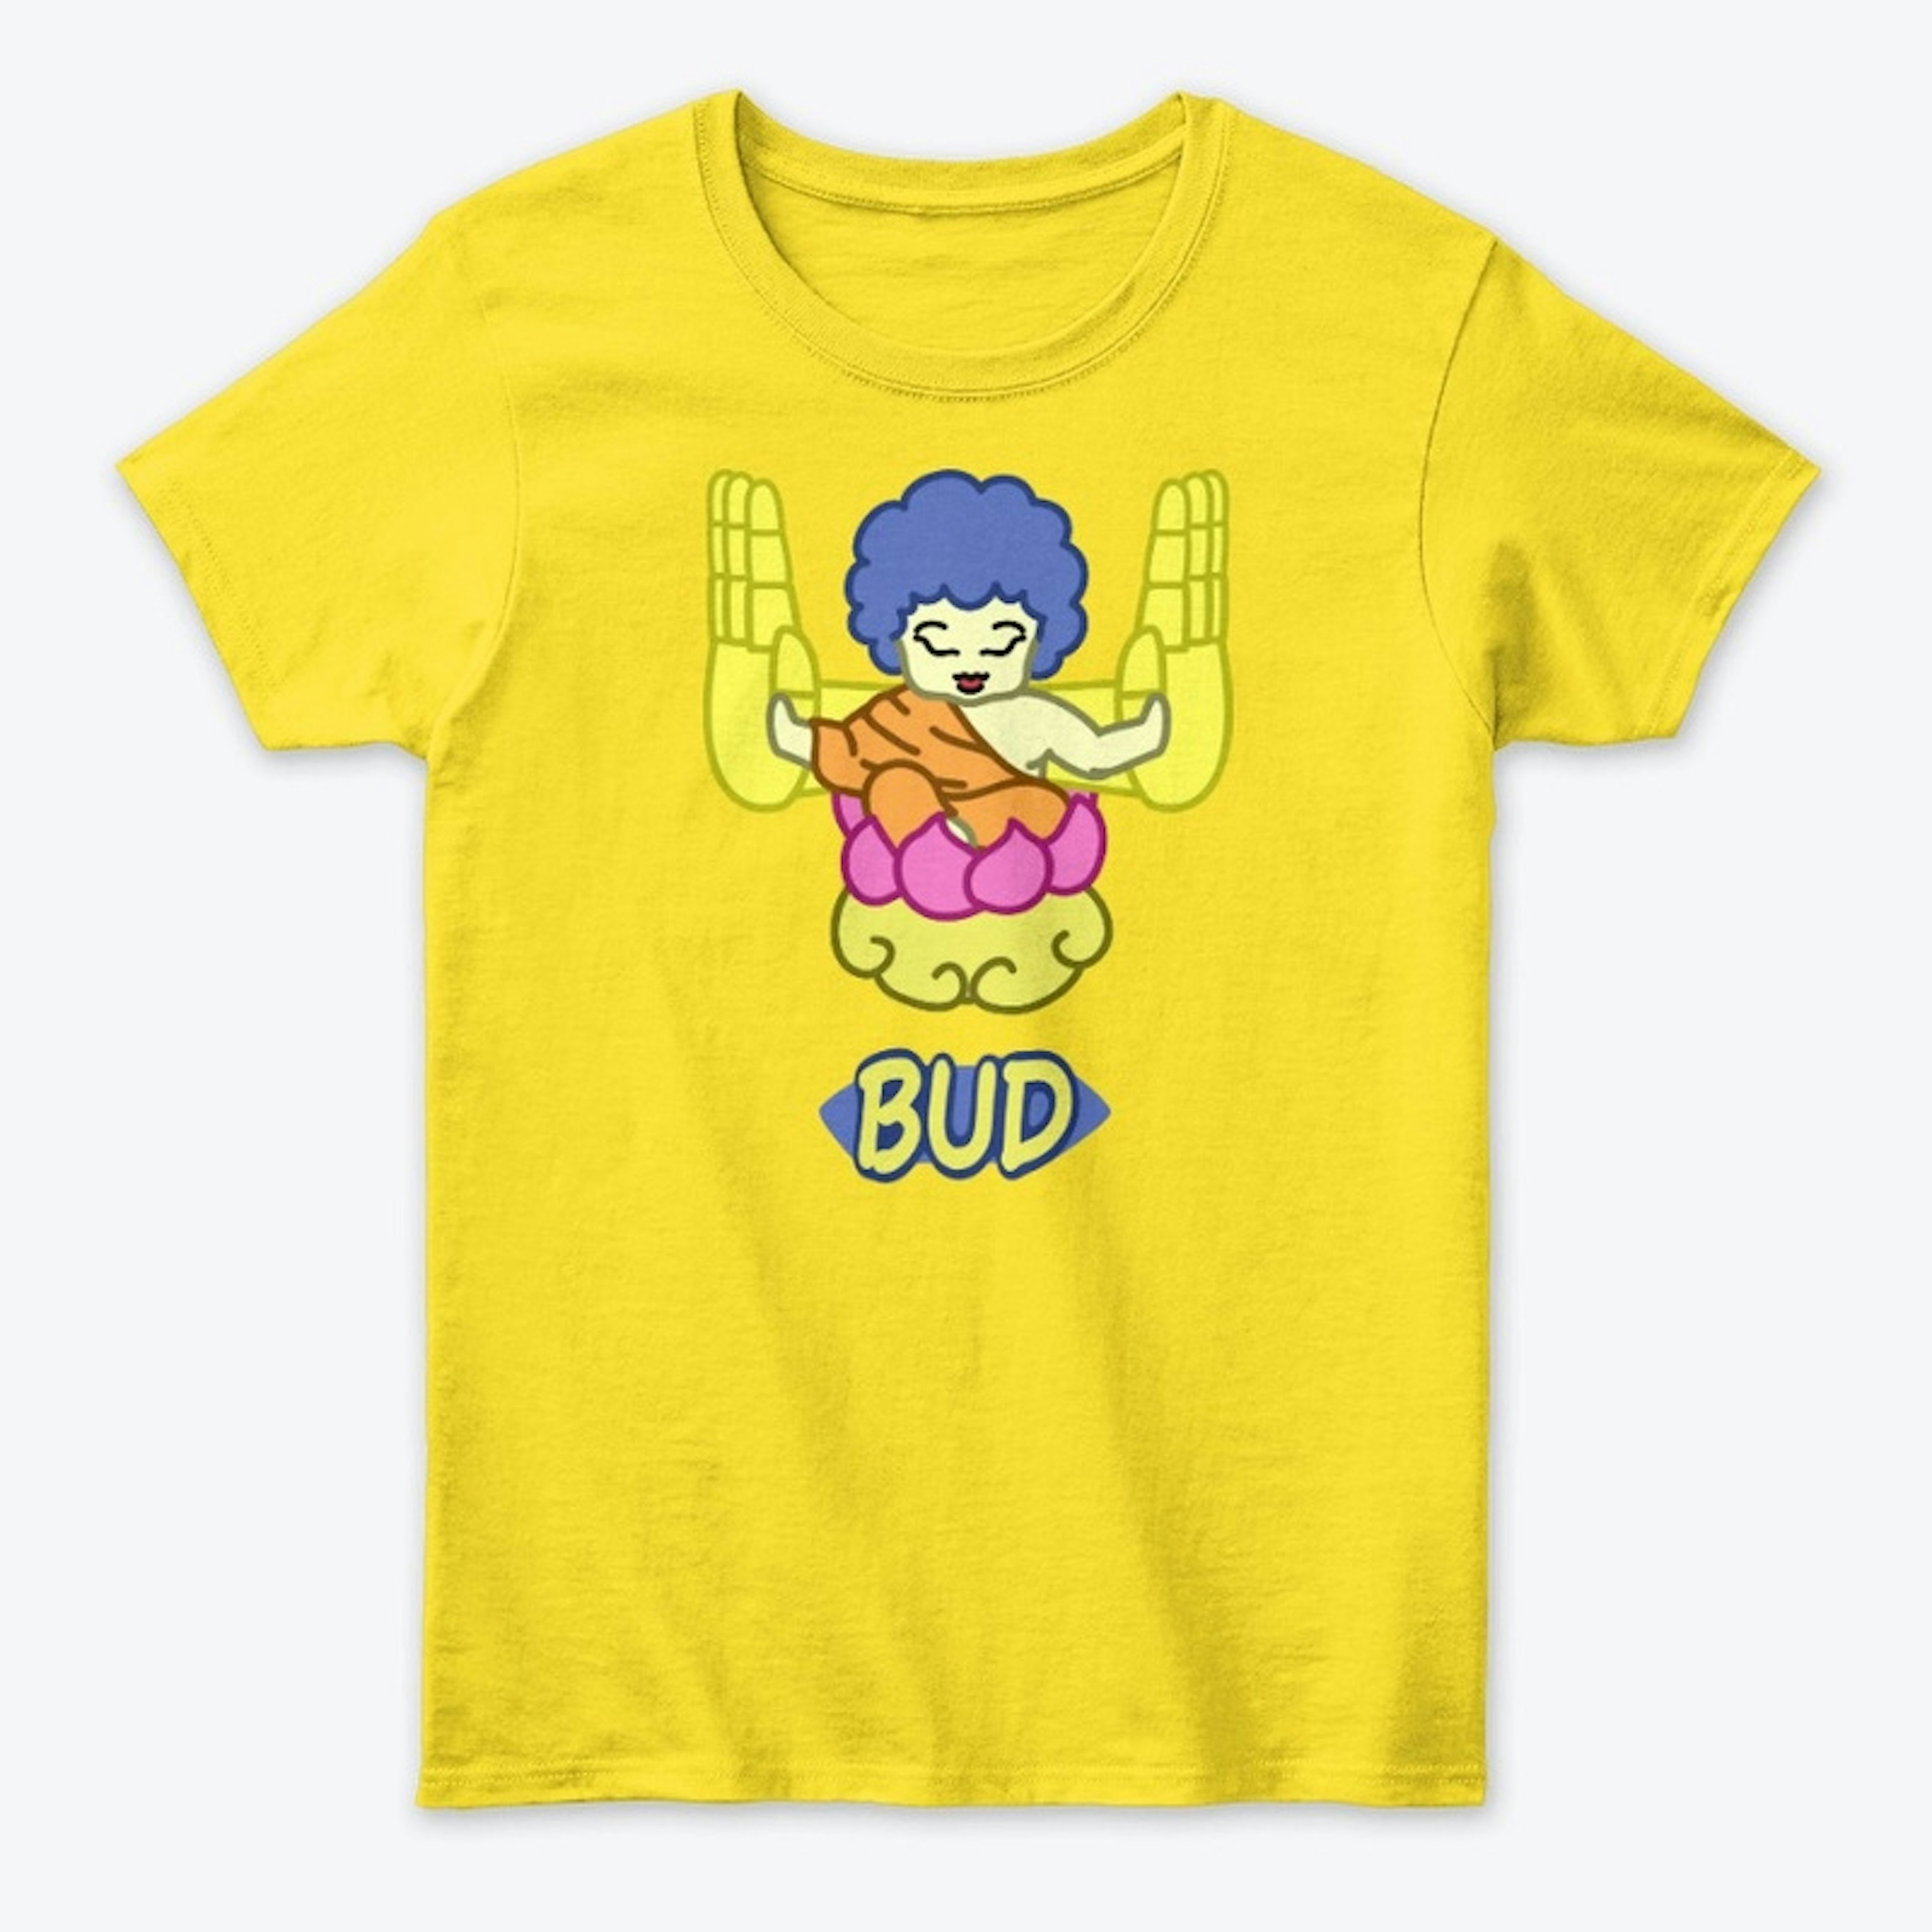 Bud Shirt